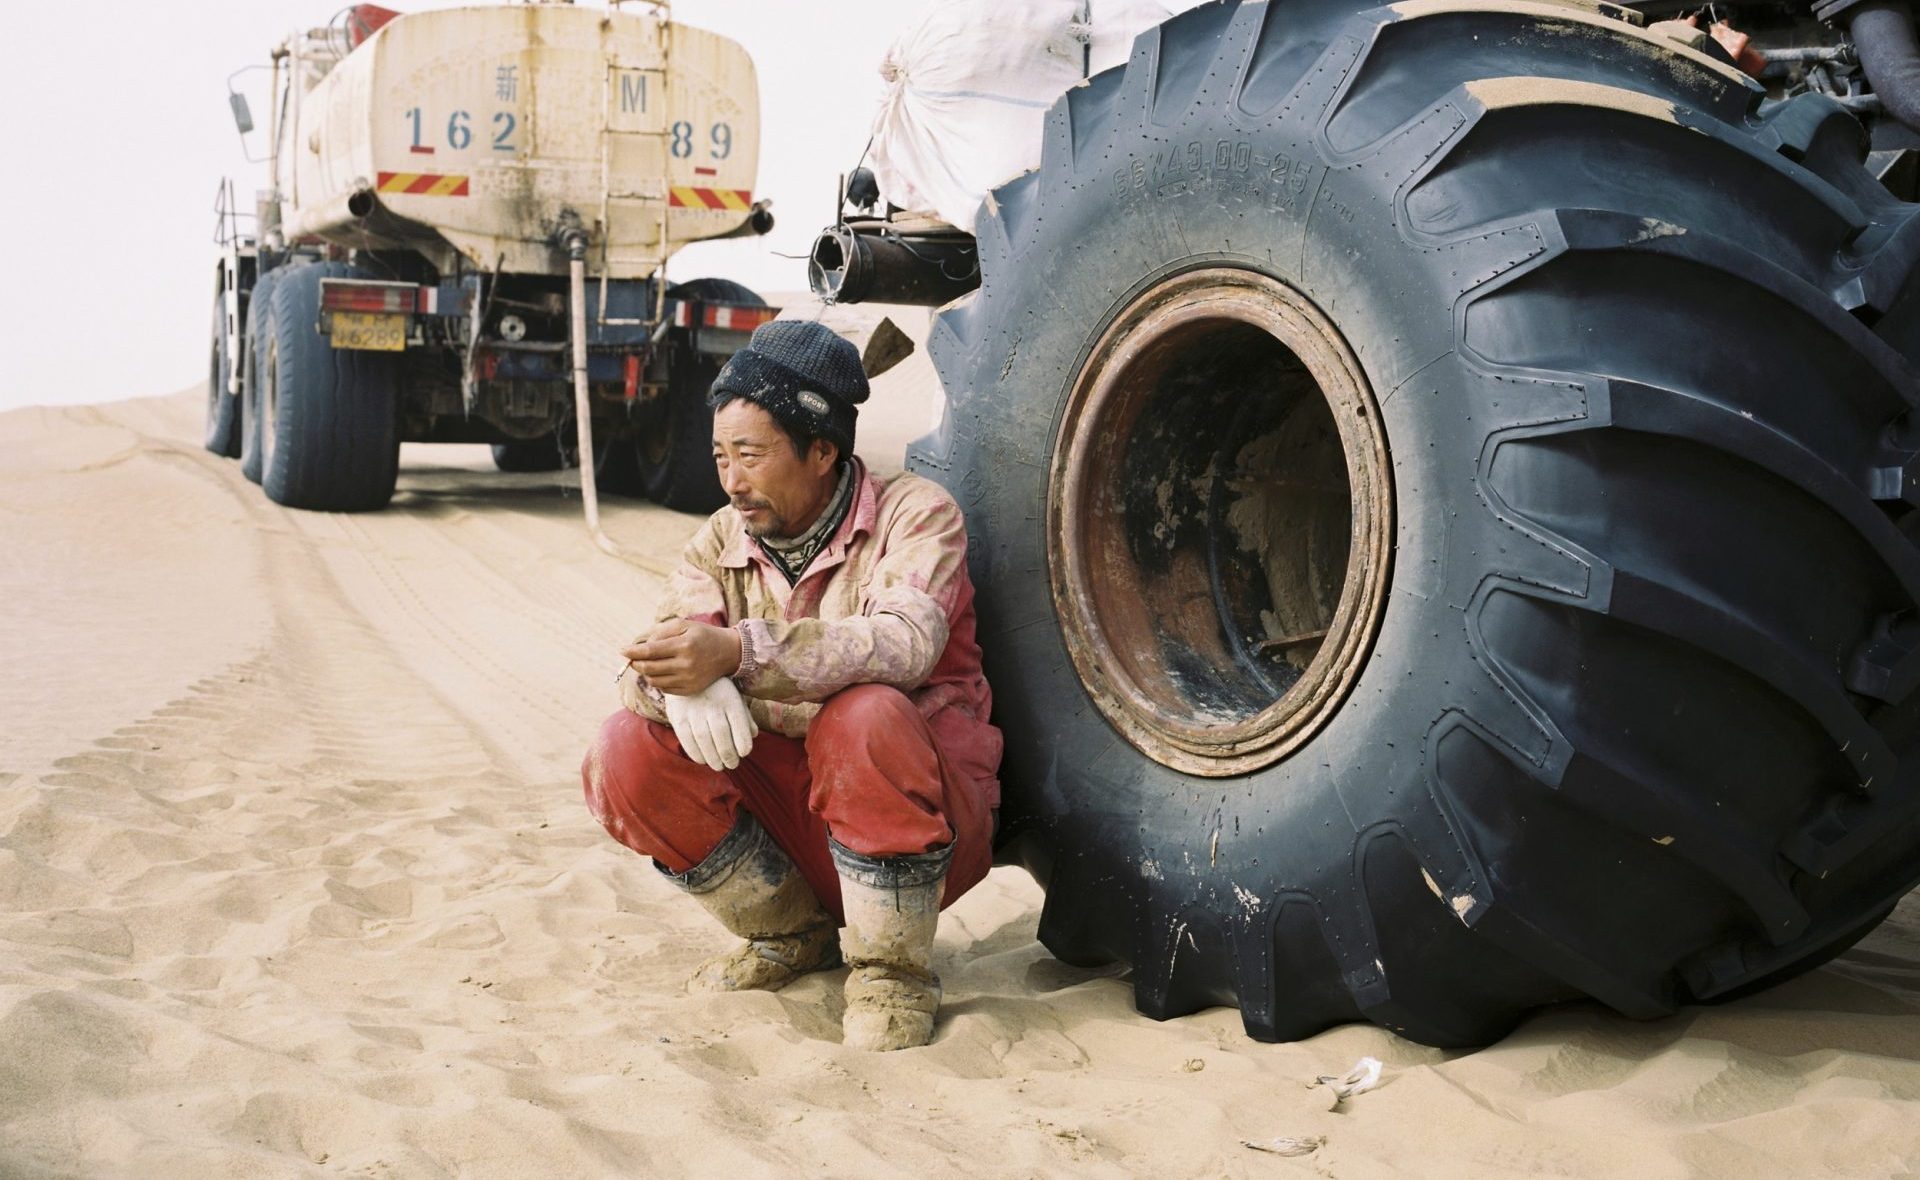 Décembre 2016. Un technicien qualifié de la compagnie pétrolière étatique chinoise CNPC, adossé à son véhicule après le déjeuner, dans le désert du Taklamakan dans la province chinoise du Xinjiang. (Copyright : Patrick Wack)